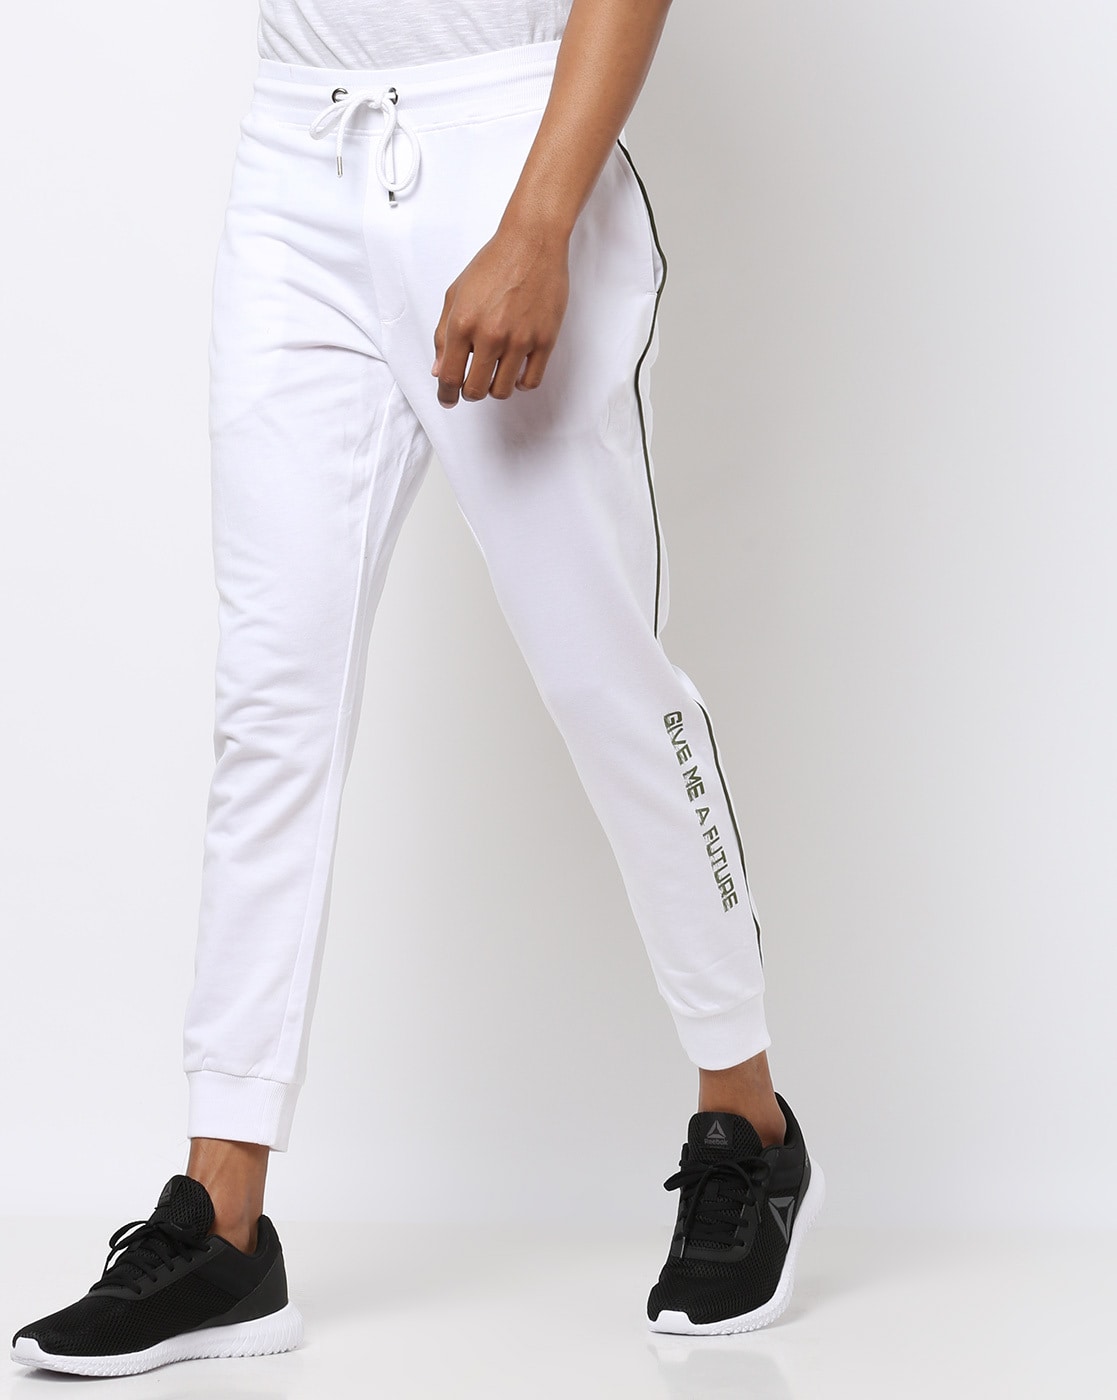 Adidas Originals ID Men's Track Pant White-Black cf9316 | eBay